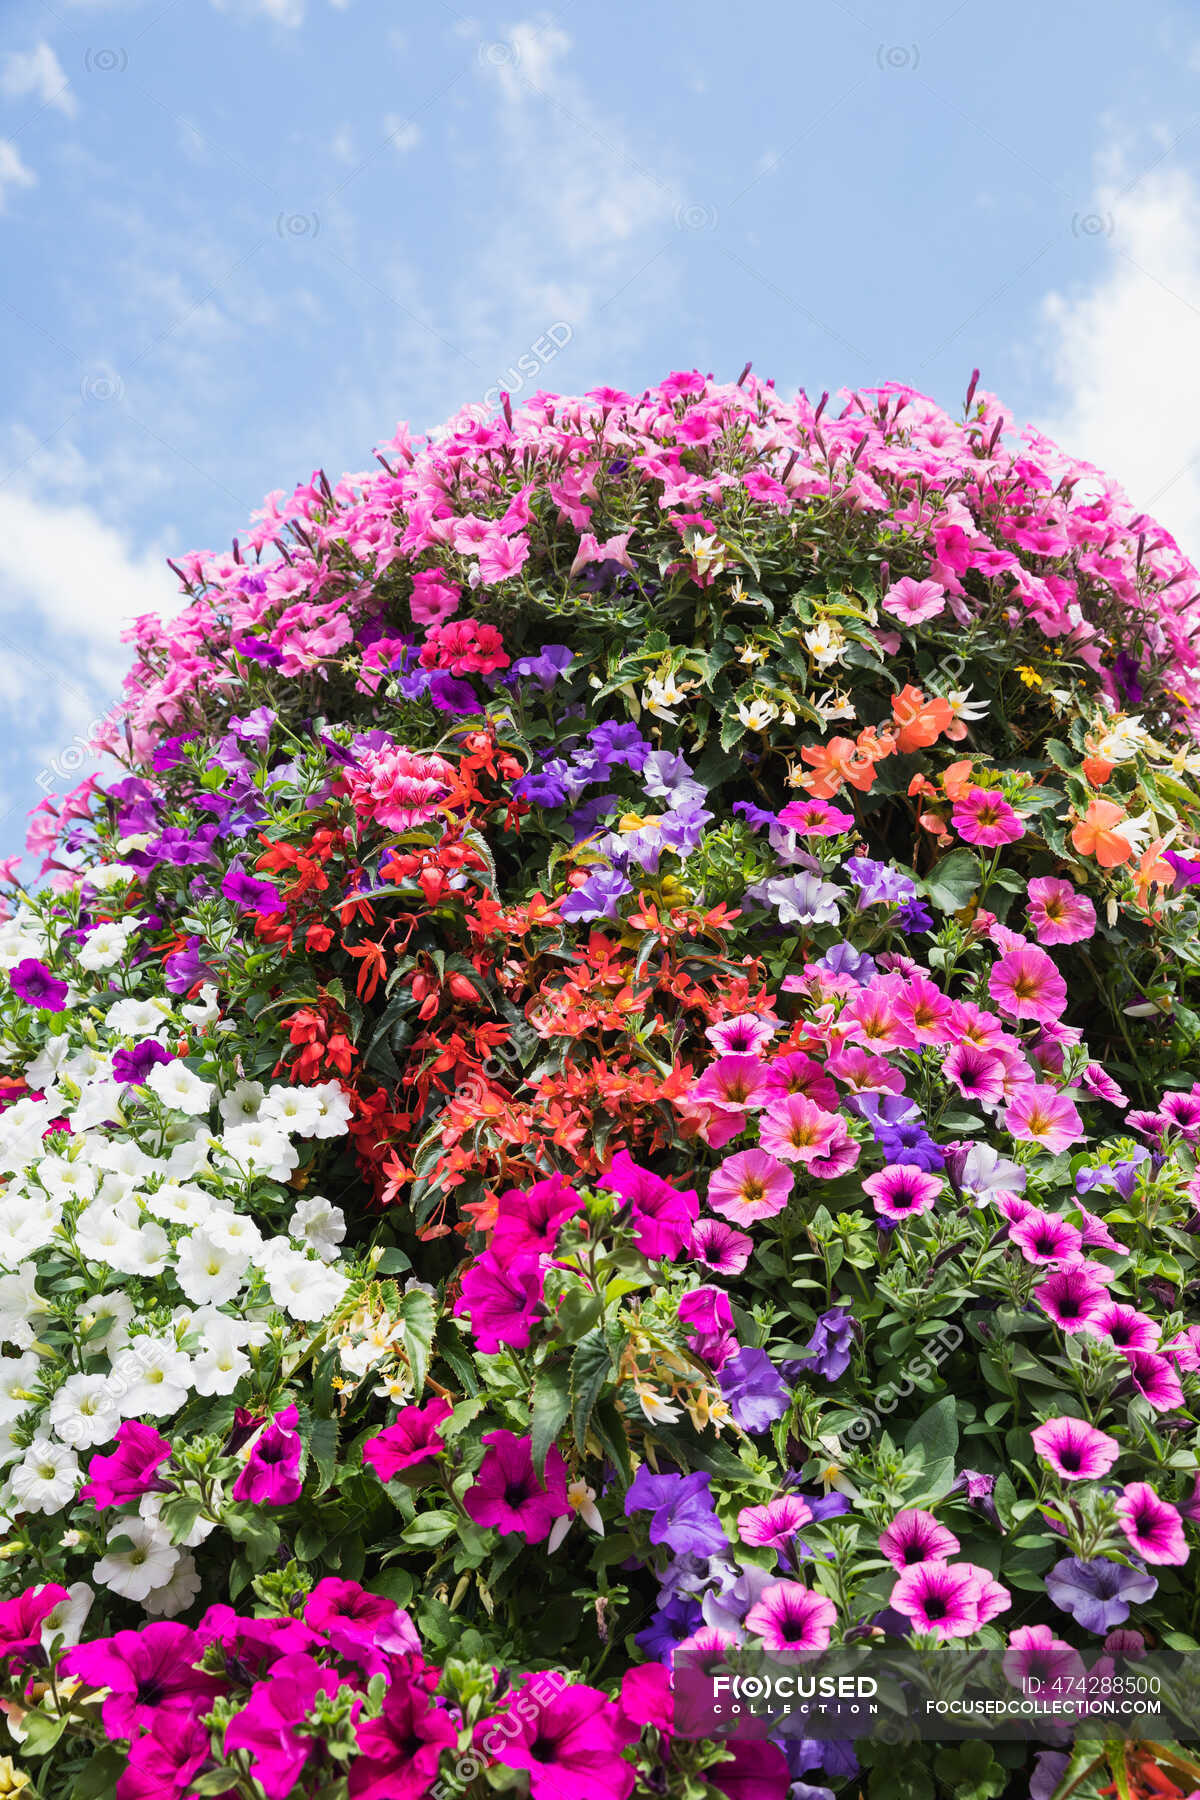 Macizo de flores de primavera de petunias coloridas y begonias —  Jardinería, Colorido - Stock Photo | #474288500